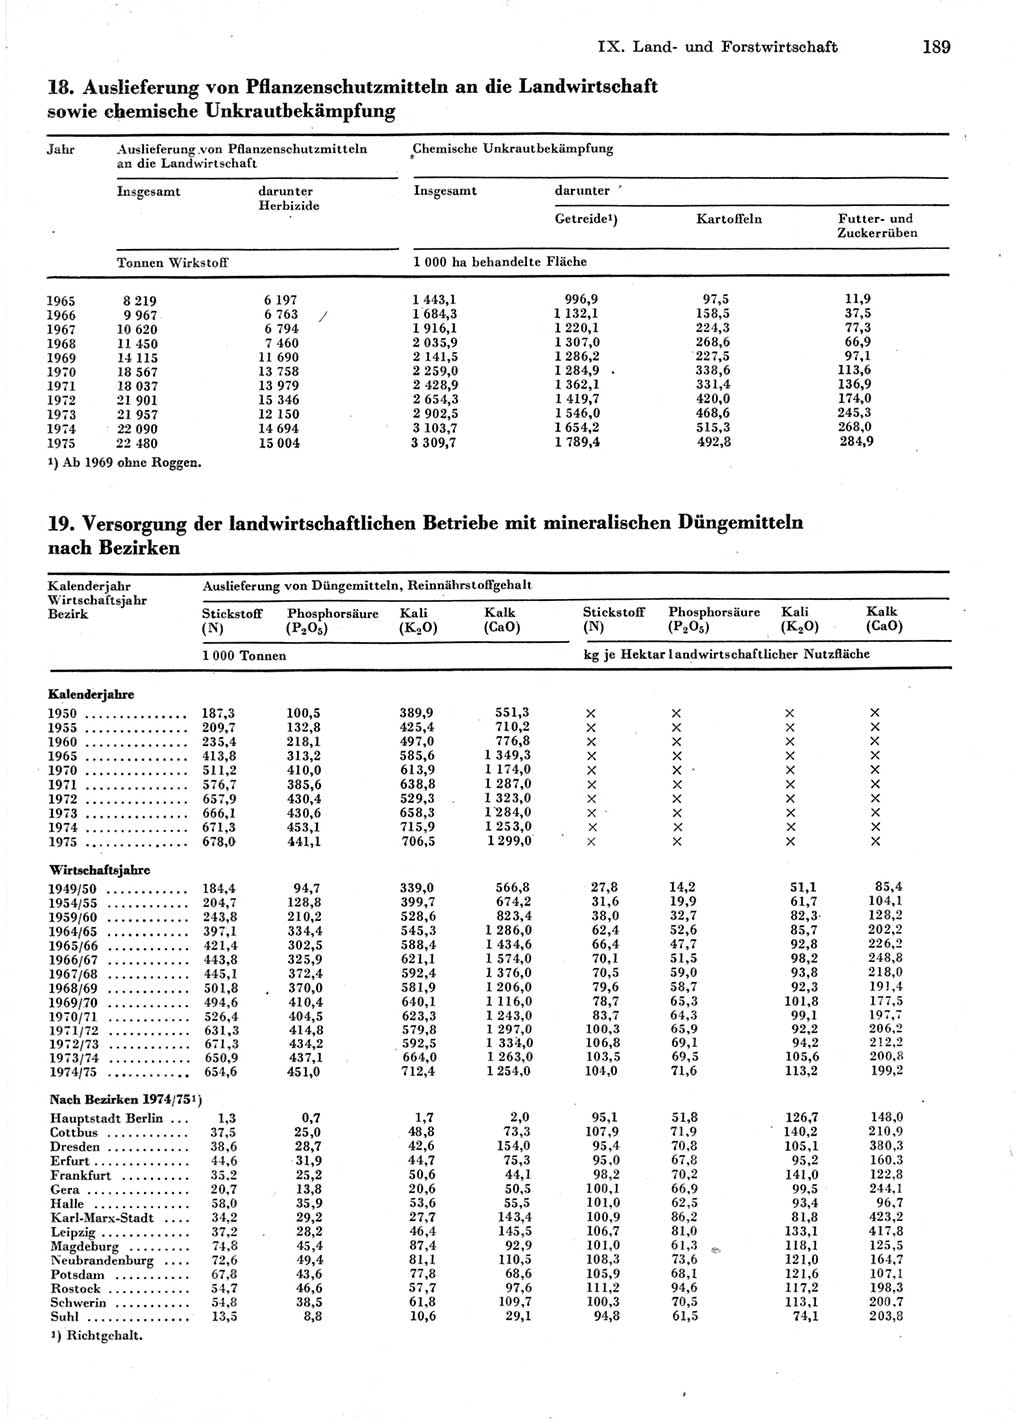 Statistisches Jahrbuch der Deutschen Demokratischen Republik (DDR) 1976, Seite 189 (Stat. Jb. DDR 1976, S. 189)